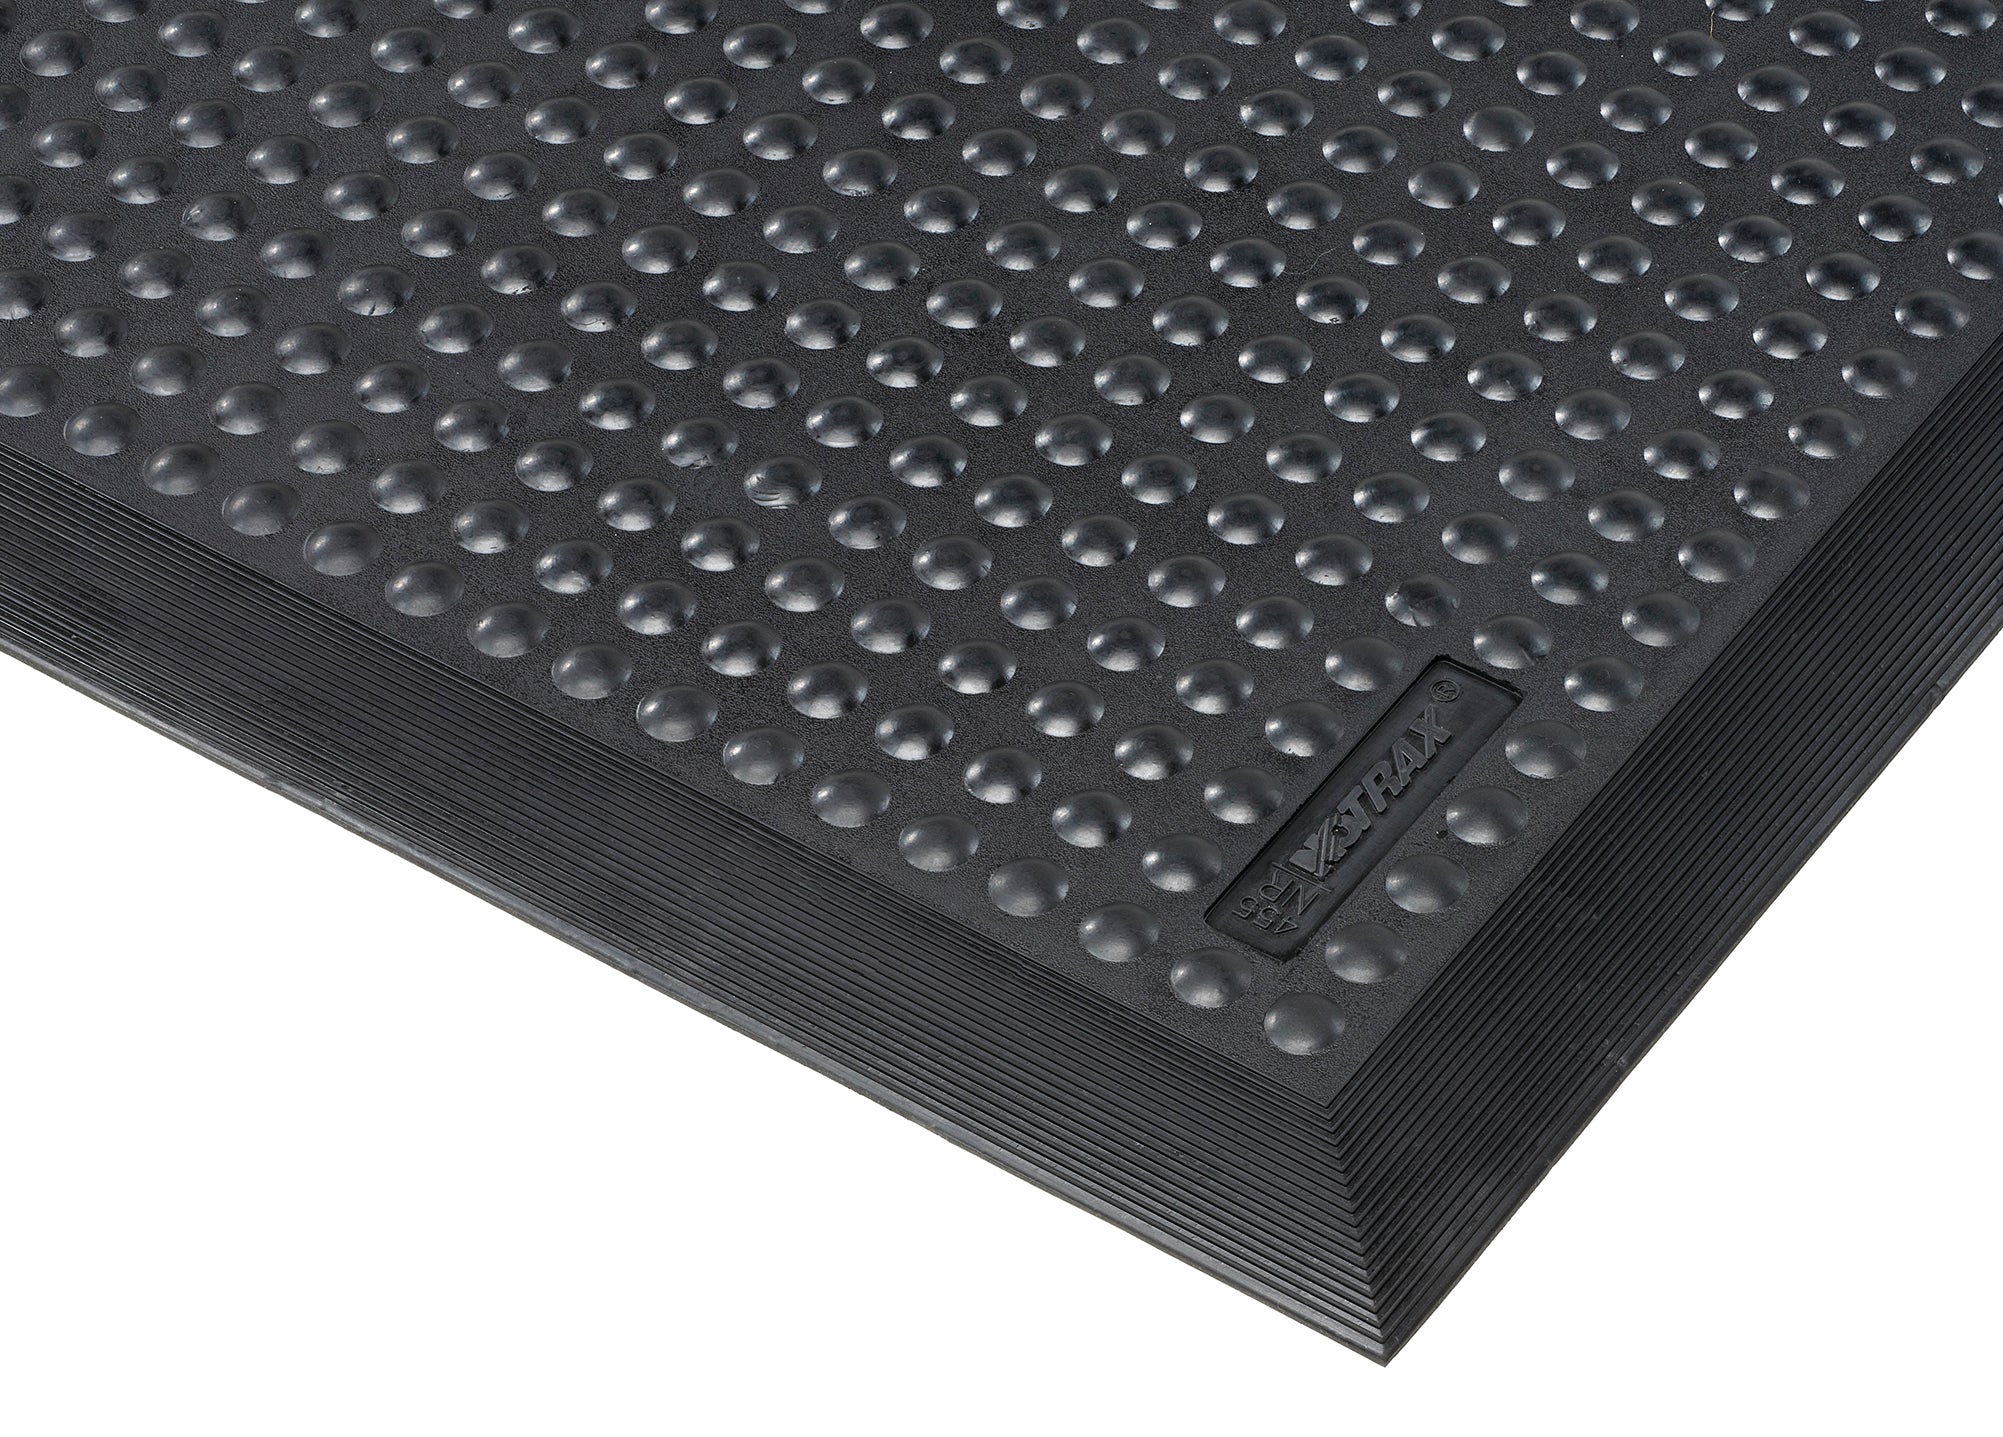 SkyStep™ Anti-Fatigue Mat Corner Detail